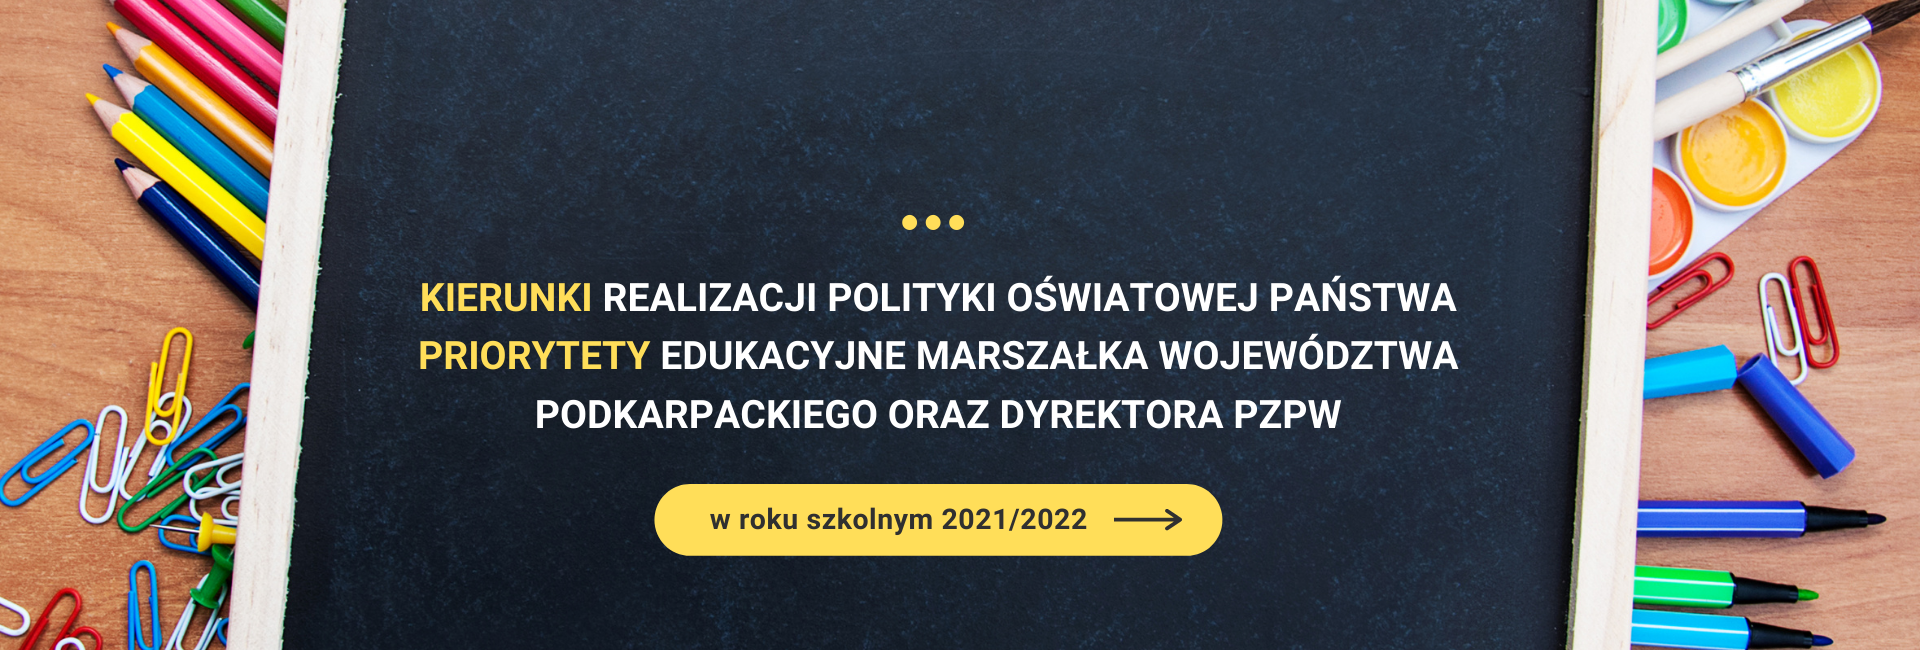 Kierunki realizacji polityki oświatowej państwa, priorytety edukacyjne marszałka województwa podkarpackiego oraz dyrektora PZPW w roku szkolnym 2021/2022